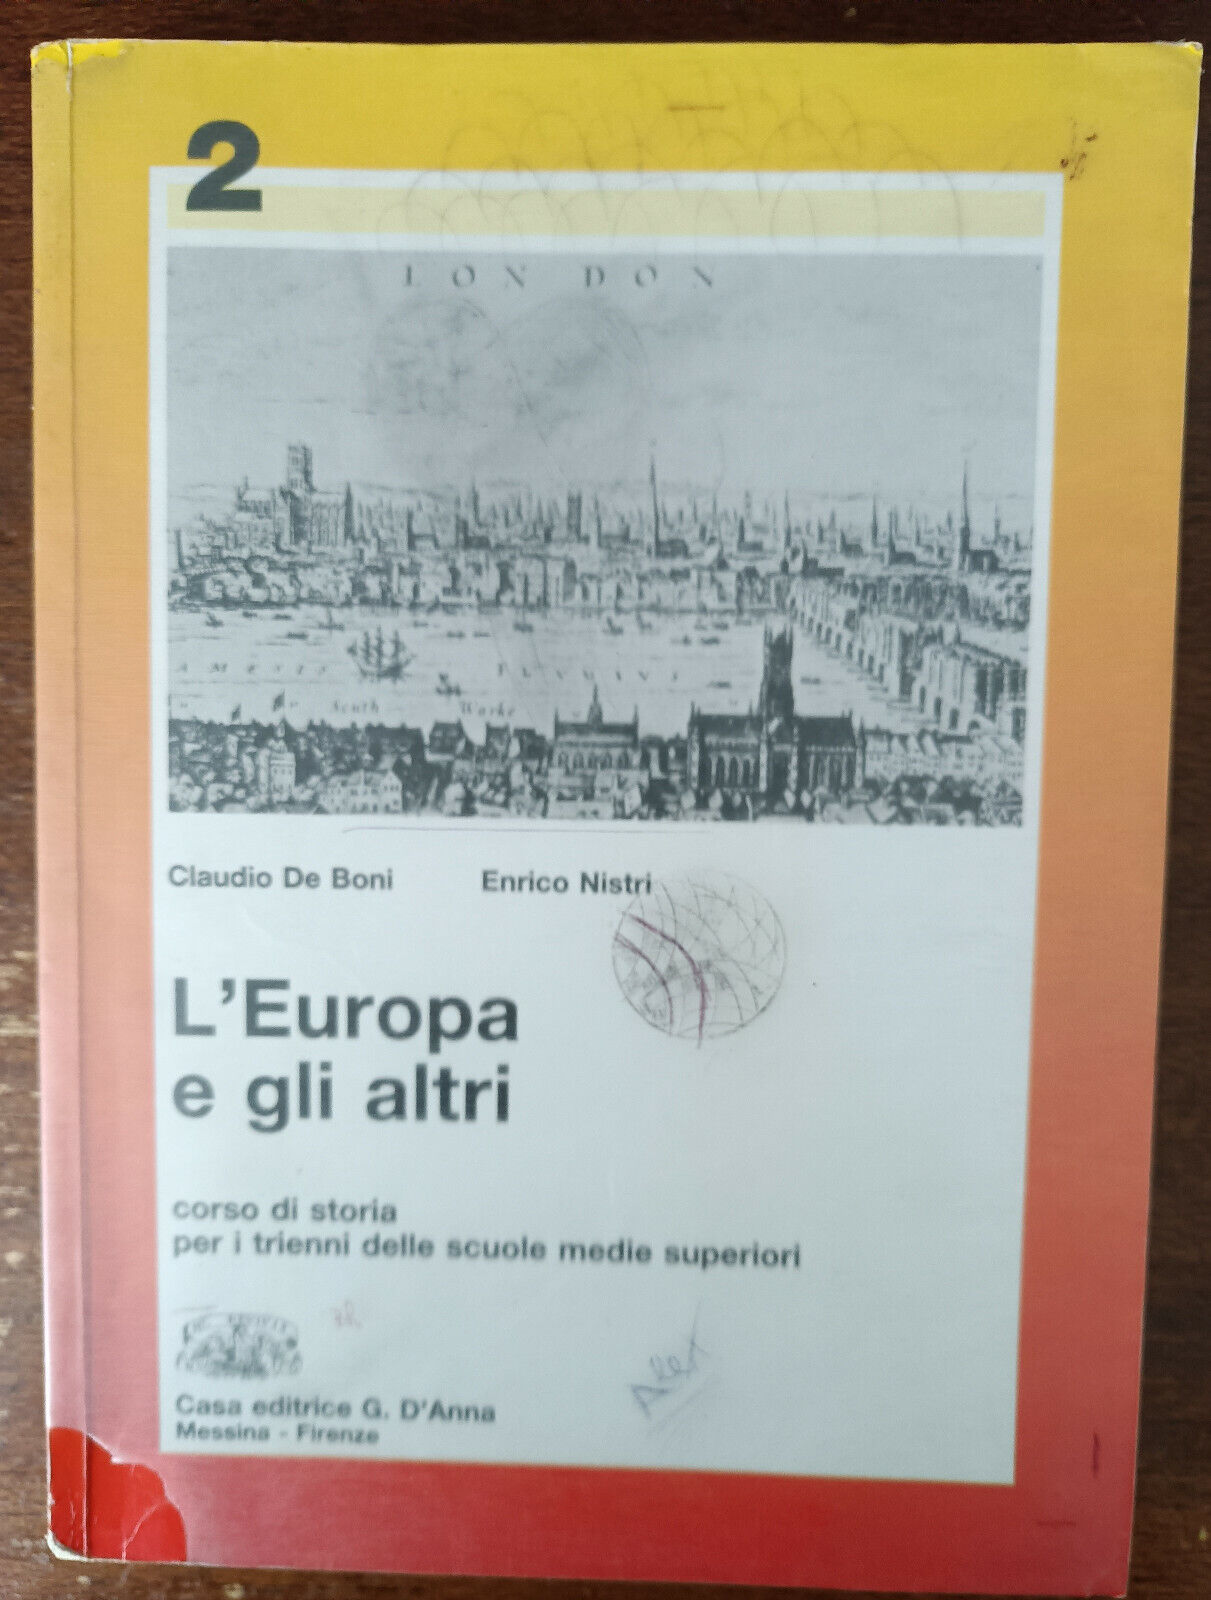 L'Europa e gli altri 2 - Claudio De Boni, Enrico Nistri - G. d'Anna, 1992 - A